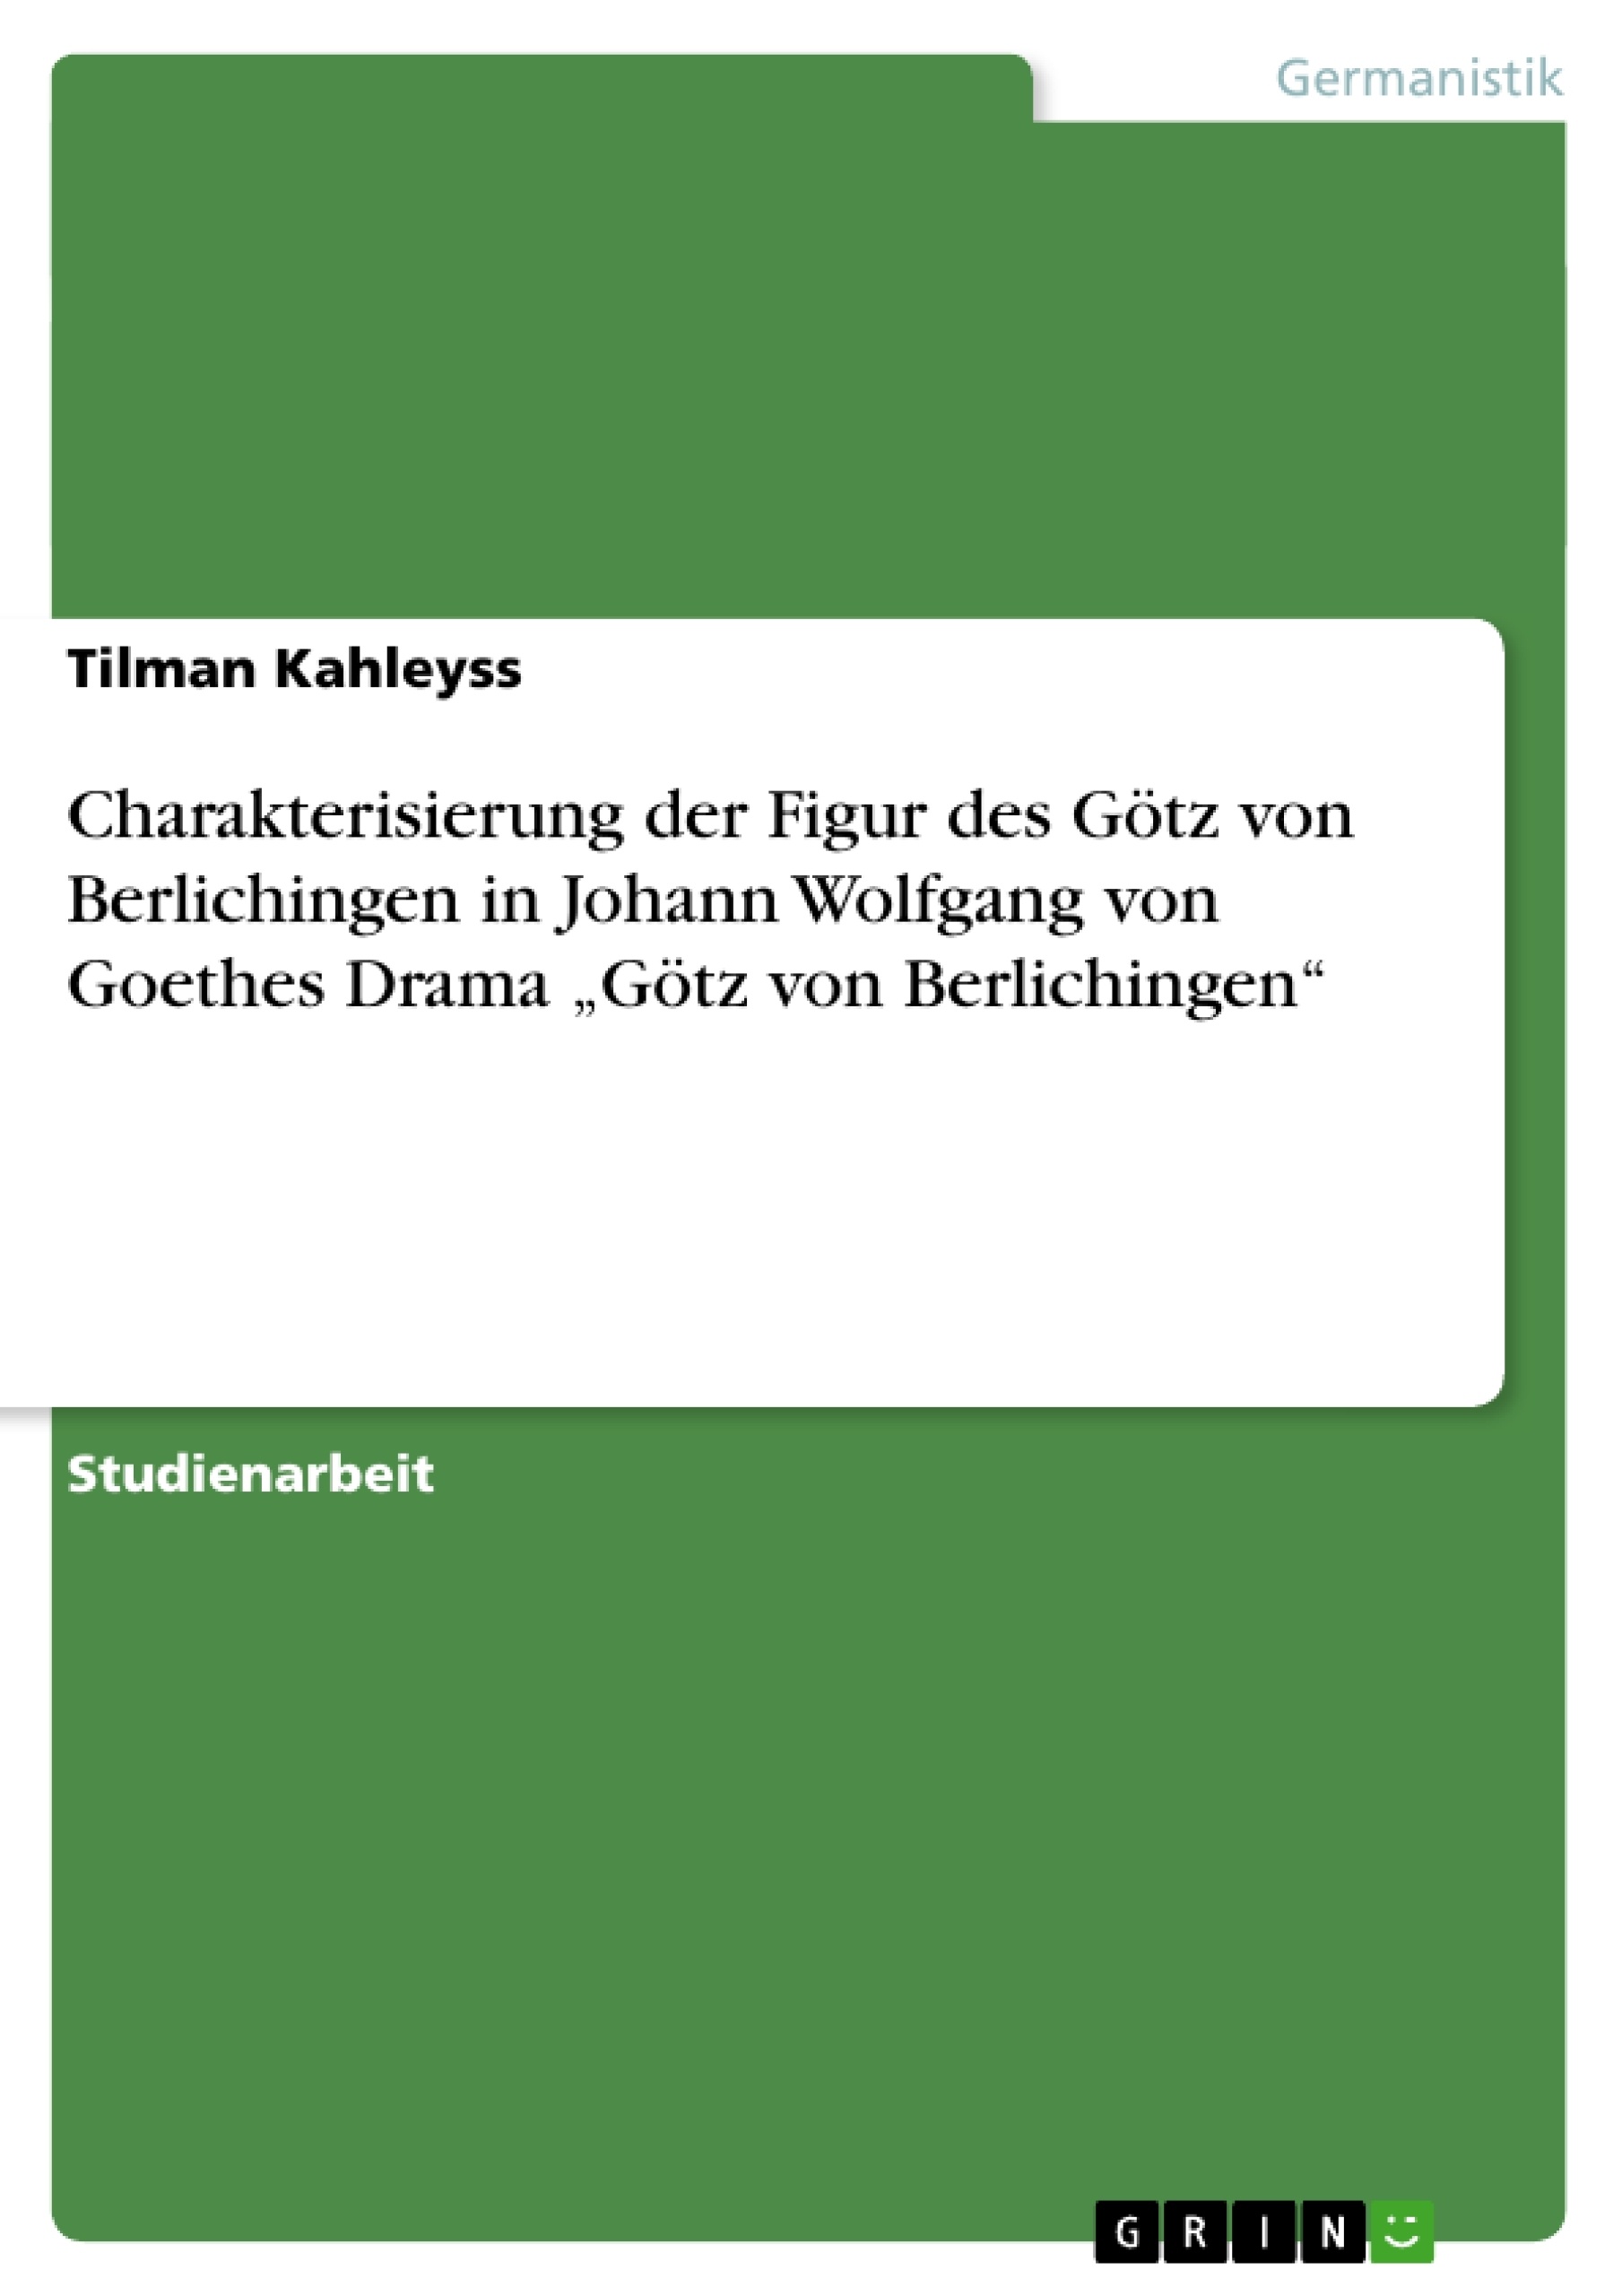 Title: Charakterisierung der Figur des Götz von Berlichingen in Johann Wolfgang von Goethes Drama „Götz von Berlichingen“